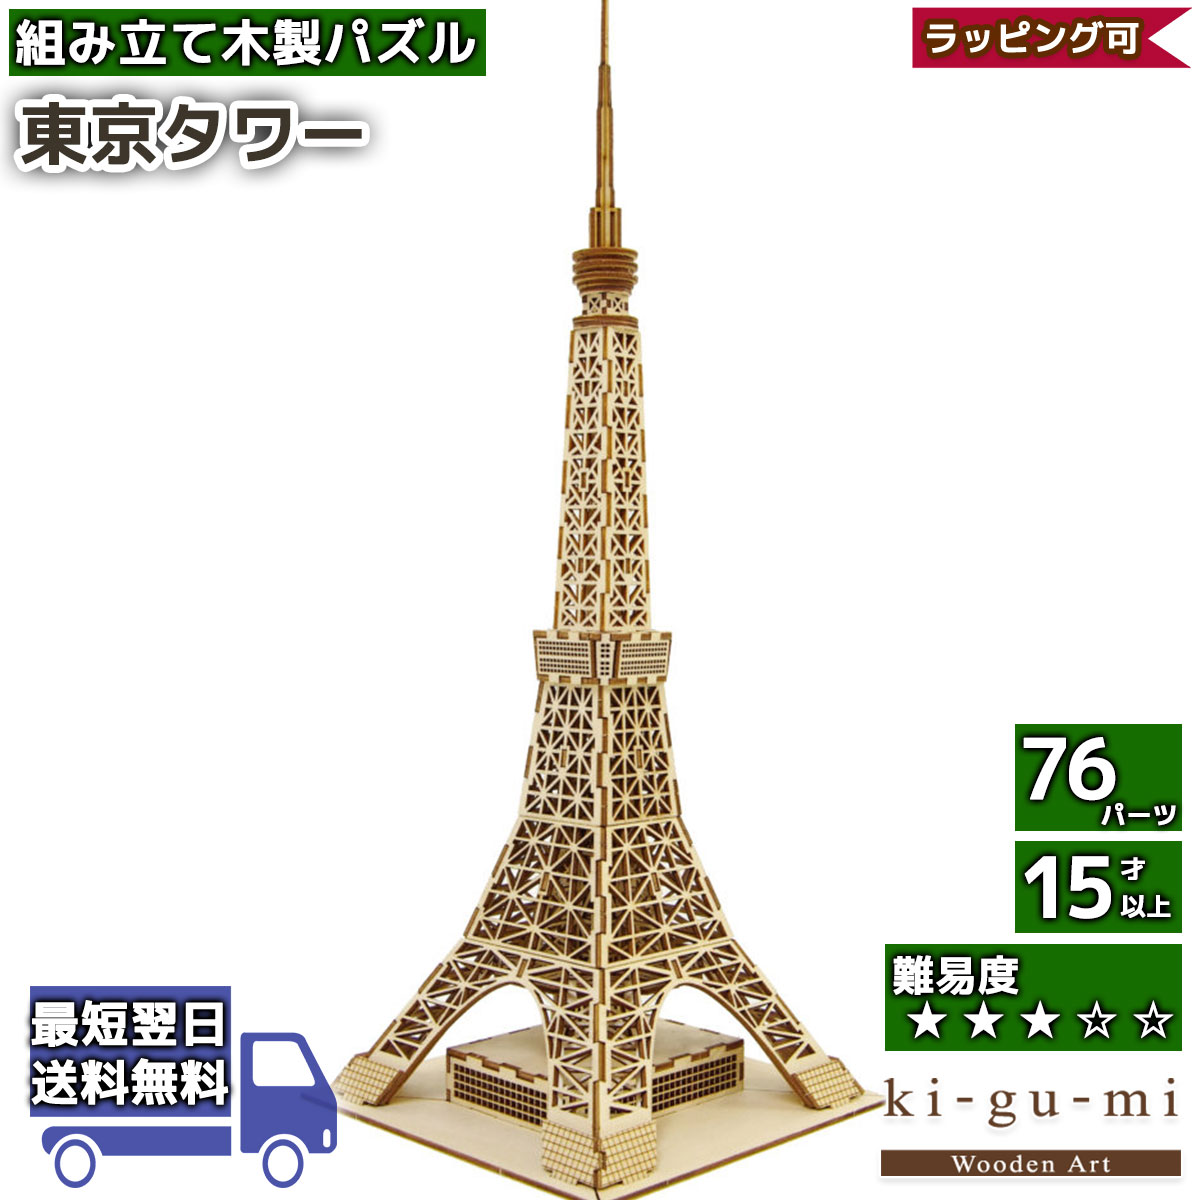 立体パズル 木製 kigumi 東京タワー 東京 タワー 日本 COOL JAPAN ki 